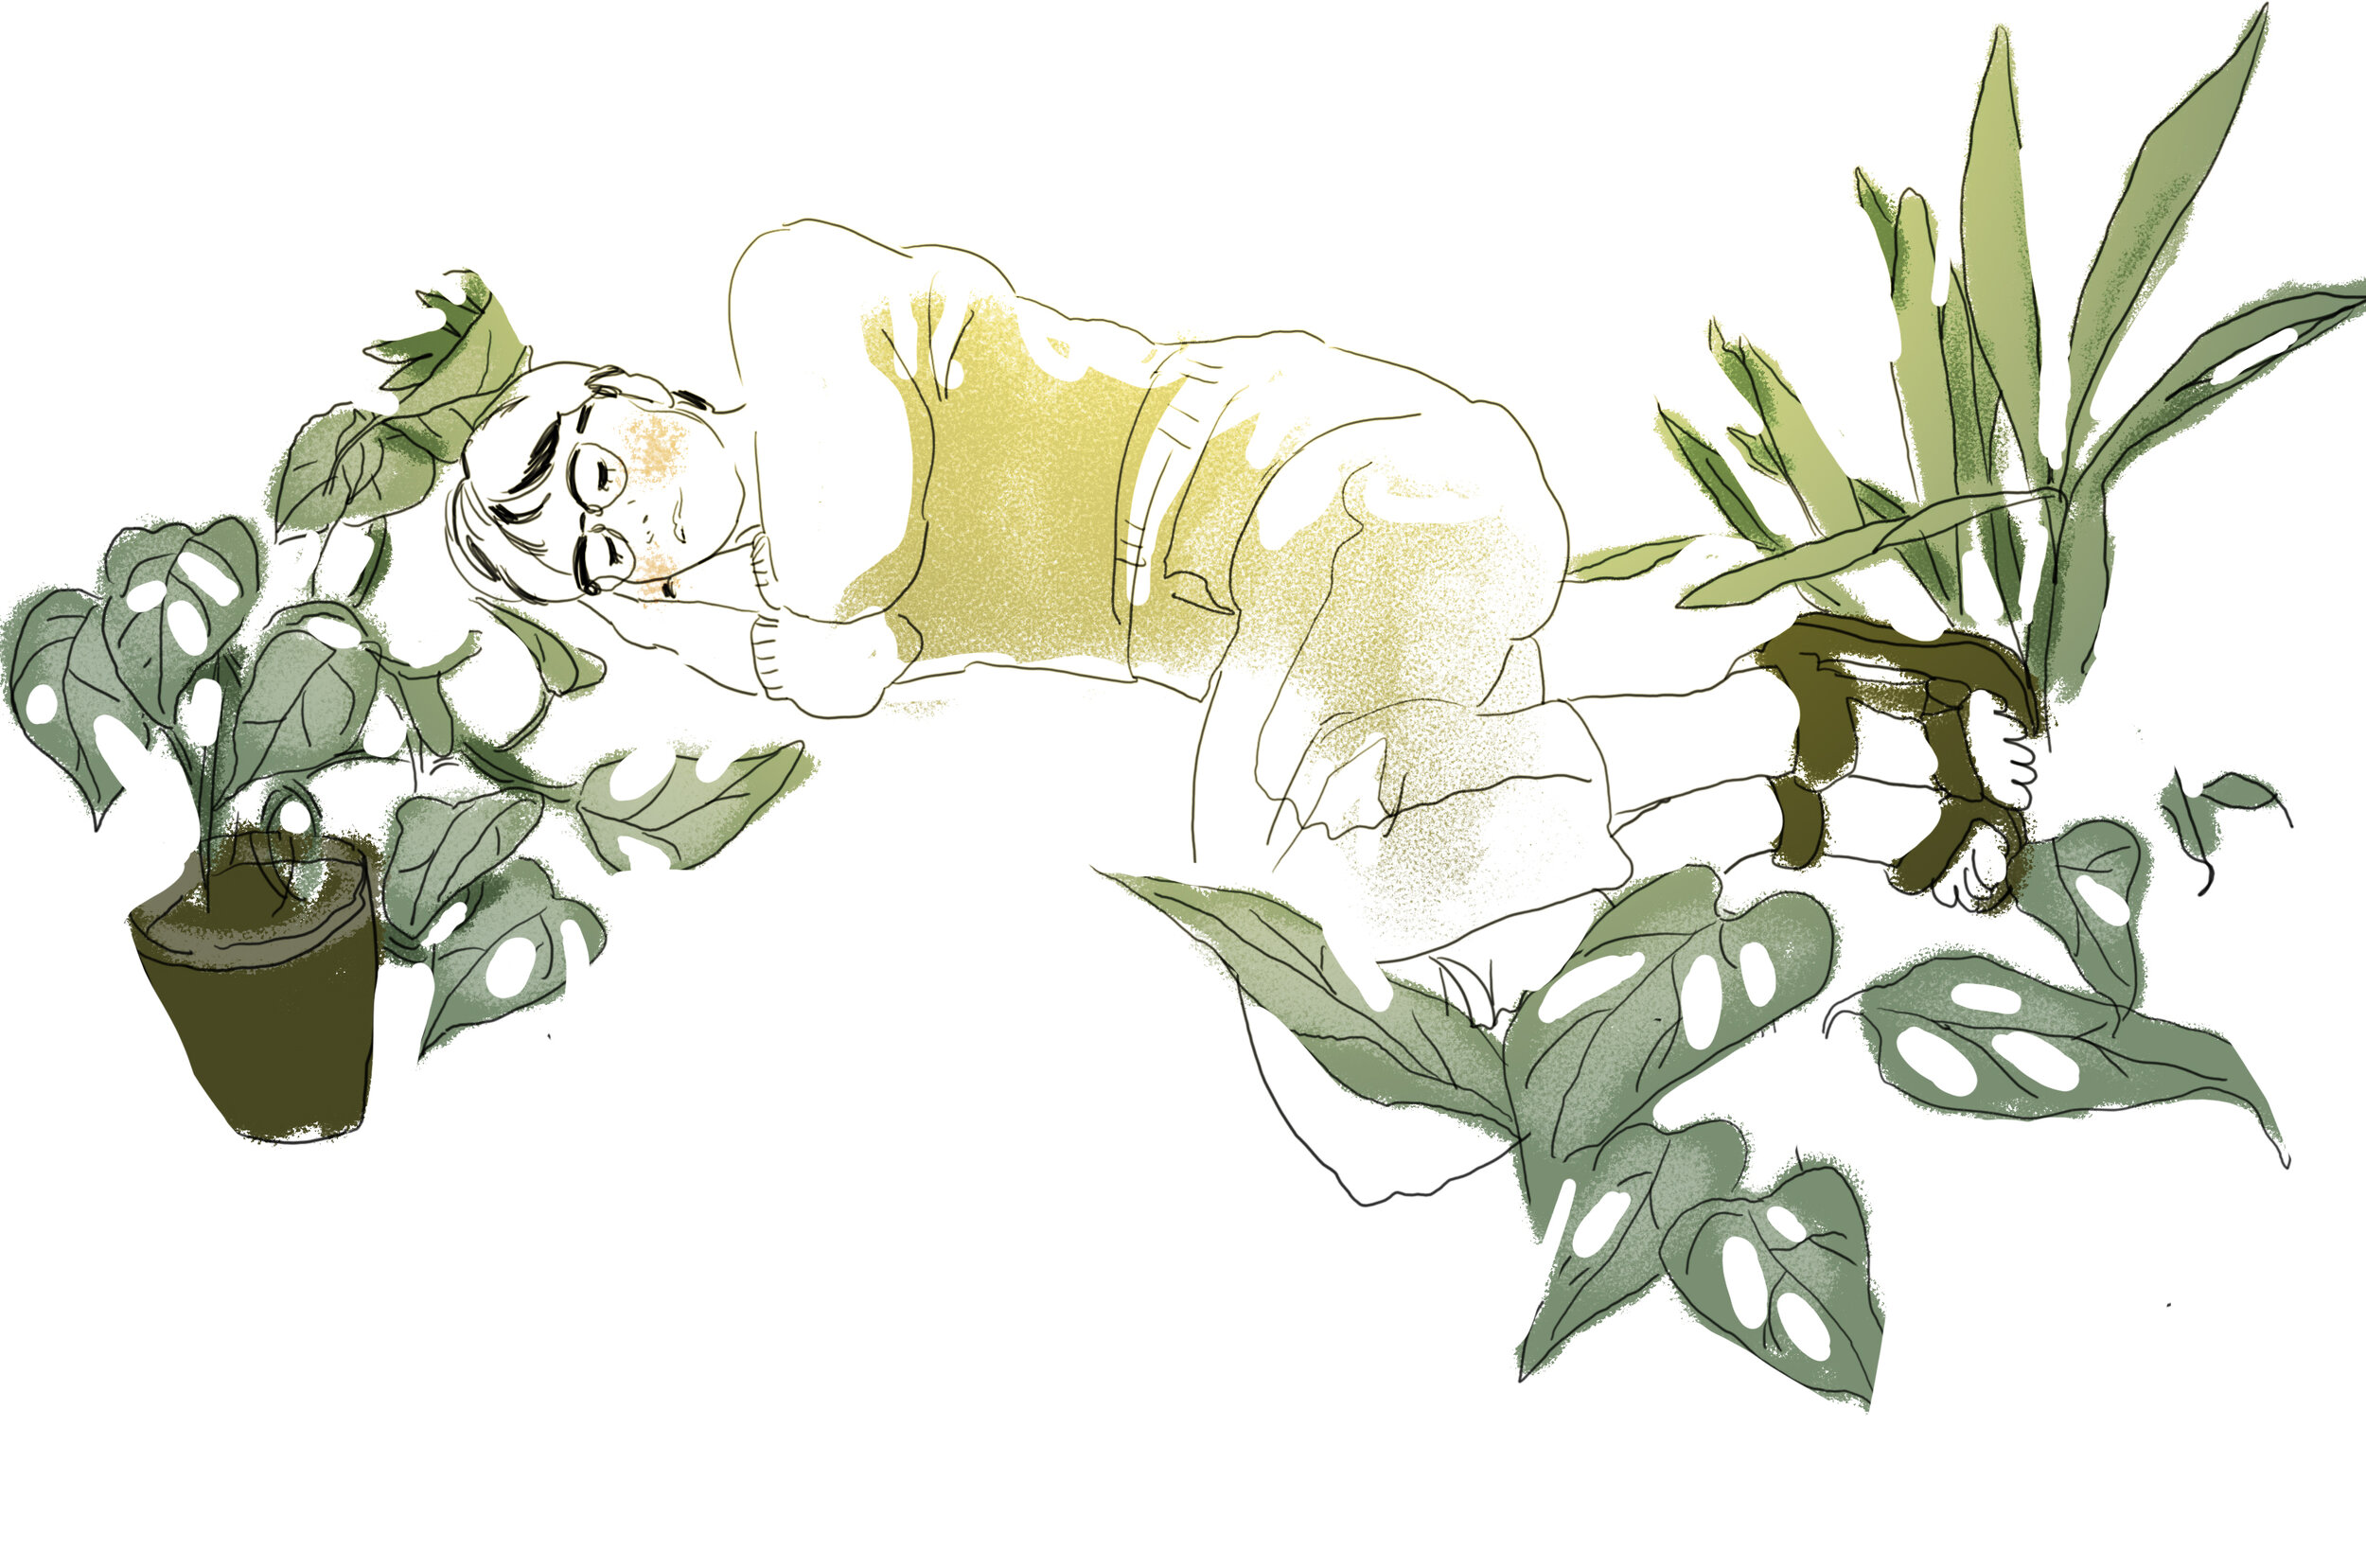  “Sleeping Among Plants'“ by Vuong Mai ‘21 